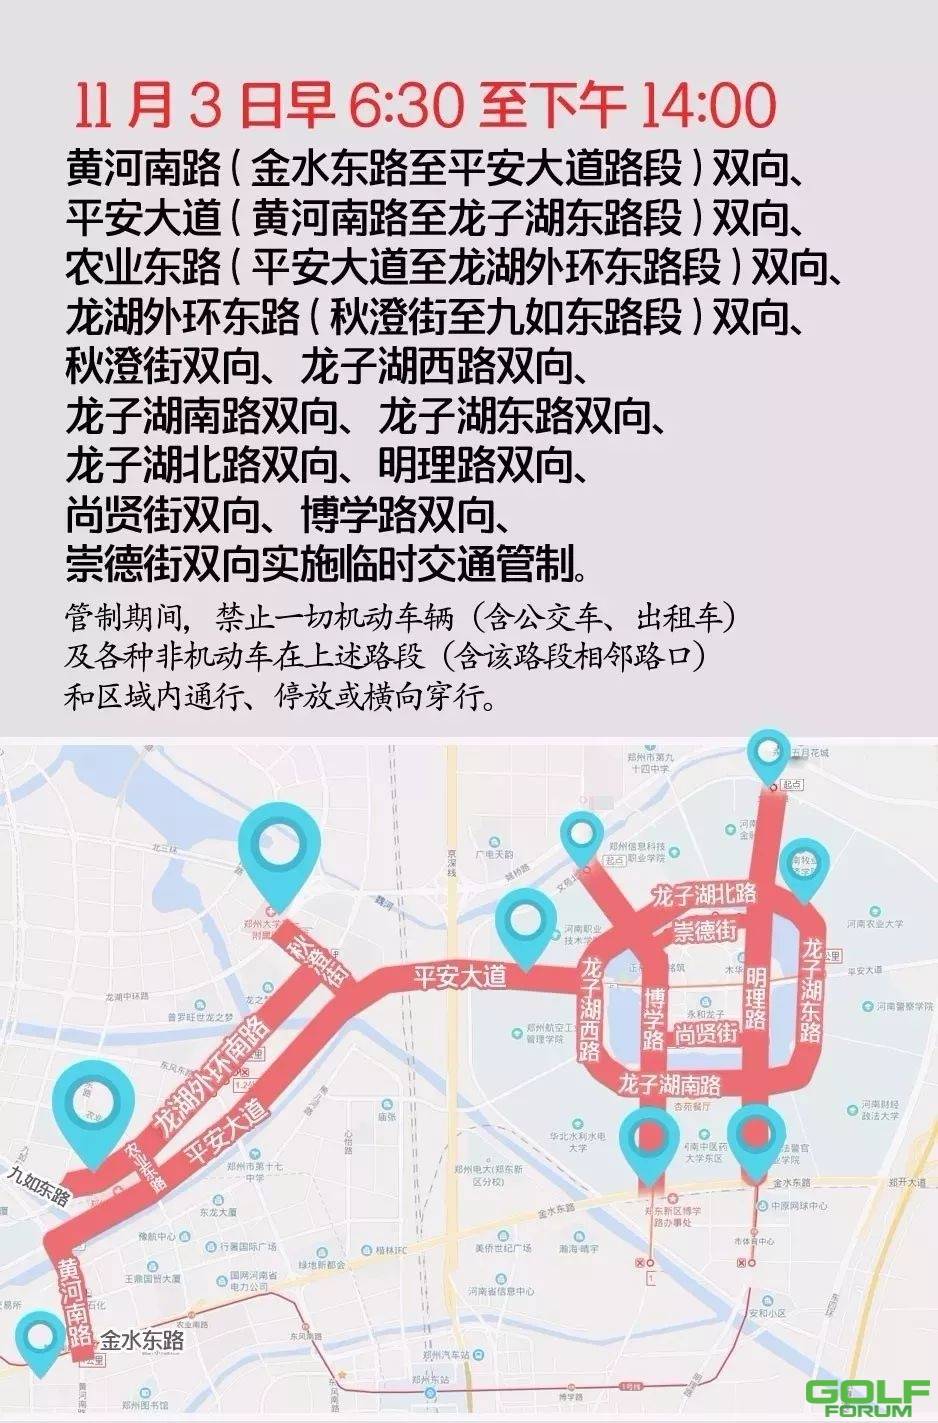 【出行交通提醒】2018郑州国际马拉松赛